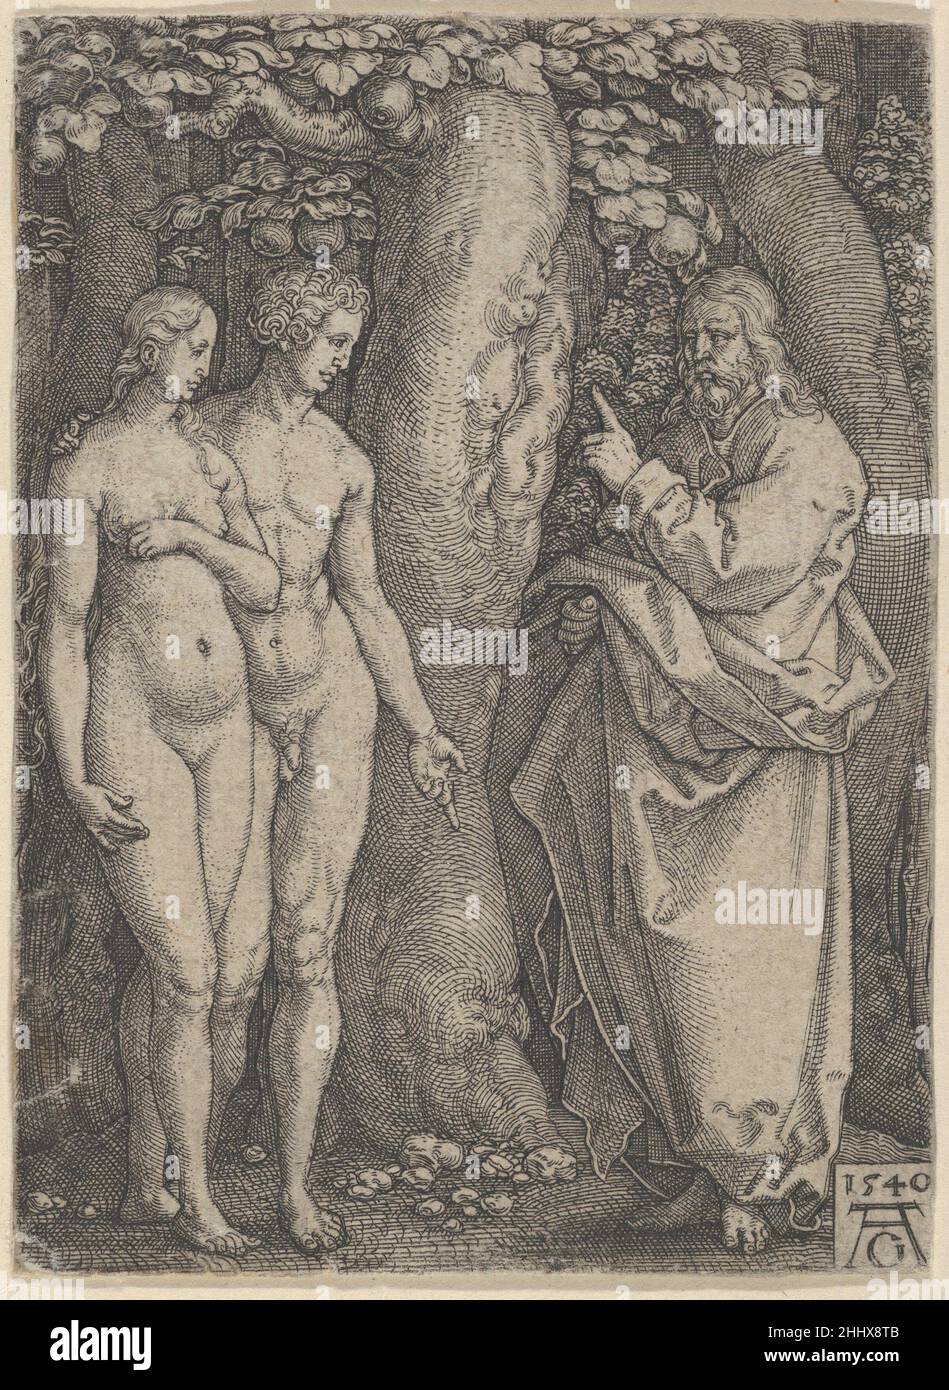 Dieu interdisant Adam et Eve de manger de l'arbre de la connaissance, de l'histoire d'Adam et Eve 1540 Heinrich Aldégraver Dieu allemand, à droite, s'adresse à Adam et Eve, qui se tiennent ensemble à gauche.Basé sur Genèse 2:16-17.Plaque 2 d'une série de six gravures.Dieu interdisait Adam et Eve de manger de l'arbre de la connaissance, de l'histoire d'Adam et Eve 428302 Banque D'Images